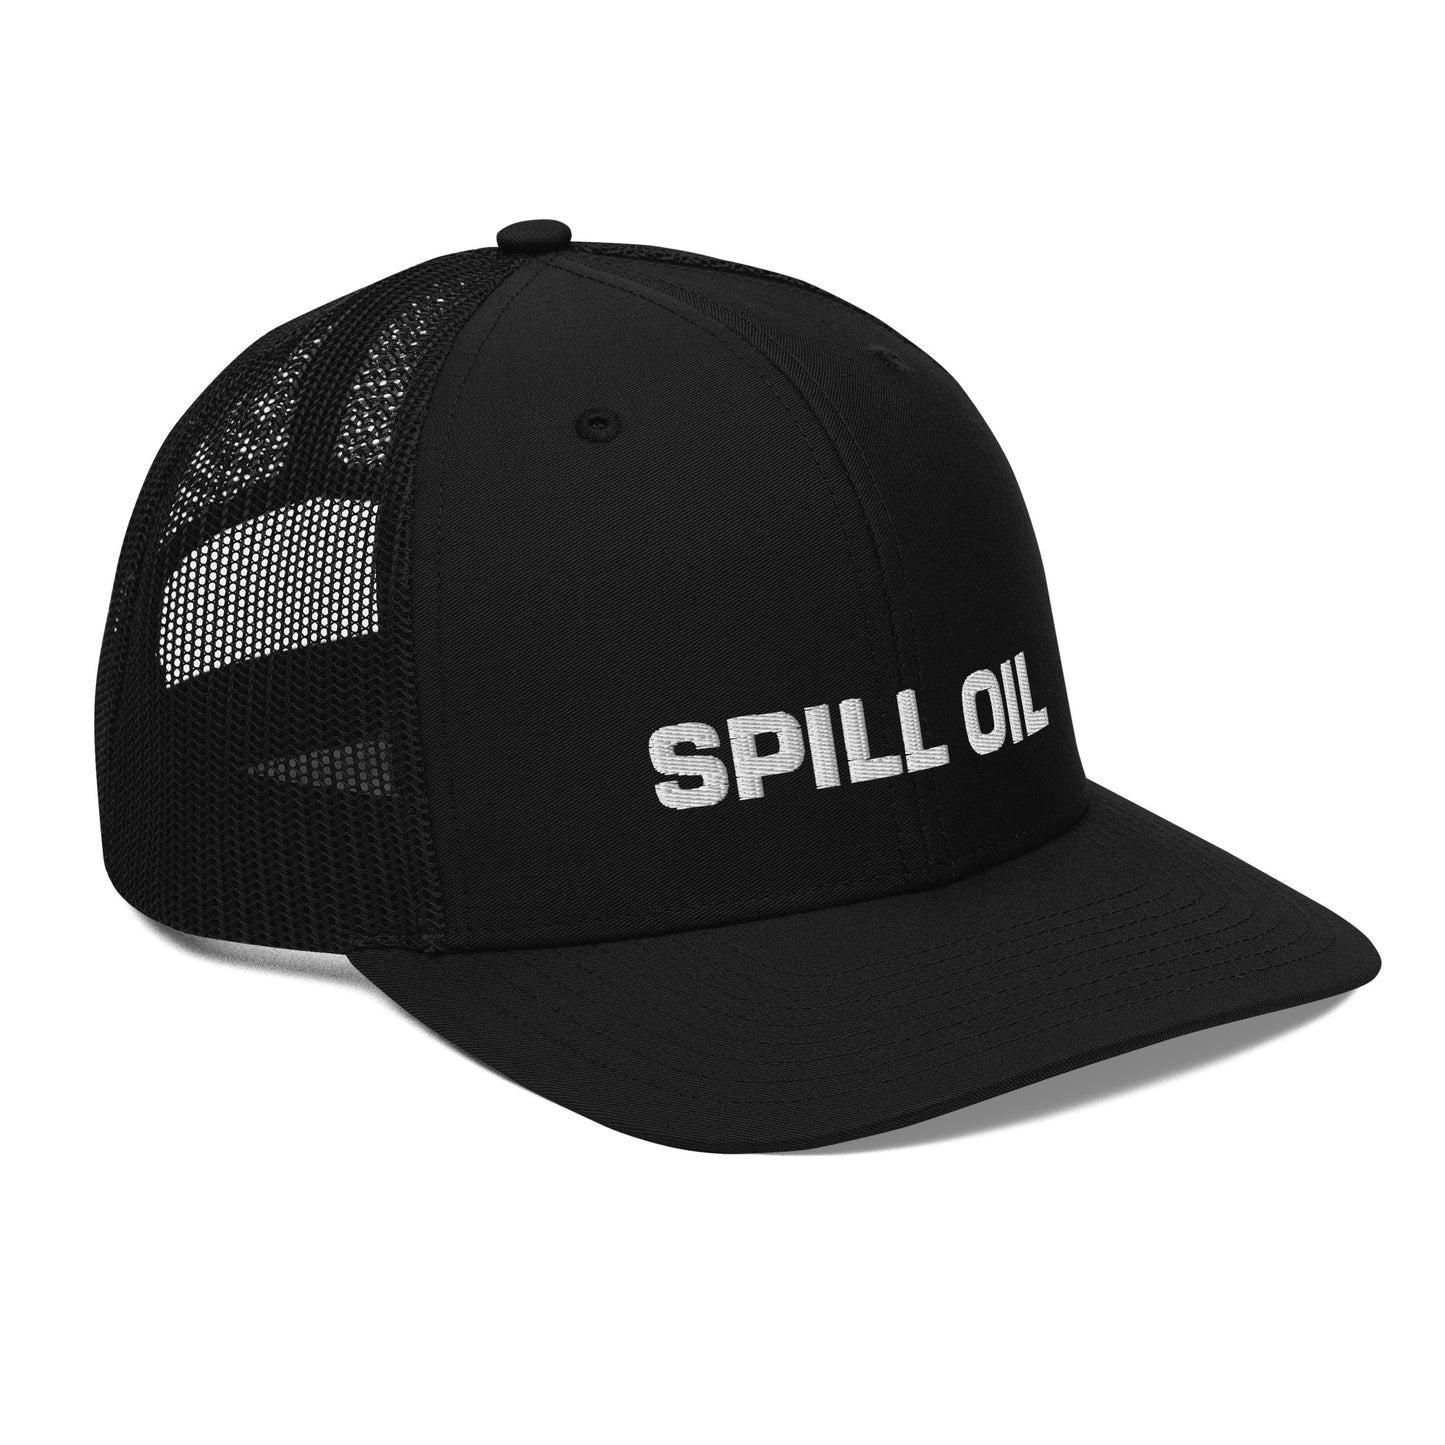 SPILL OIL - Helldivers 2 Trucker Cap